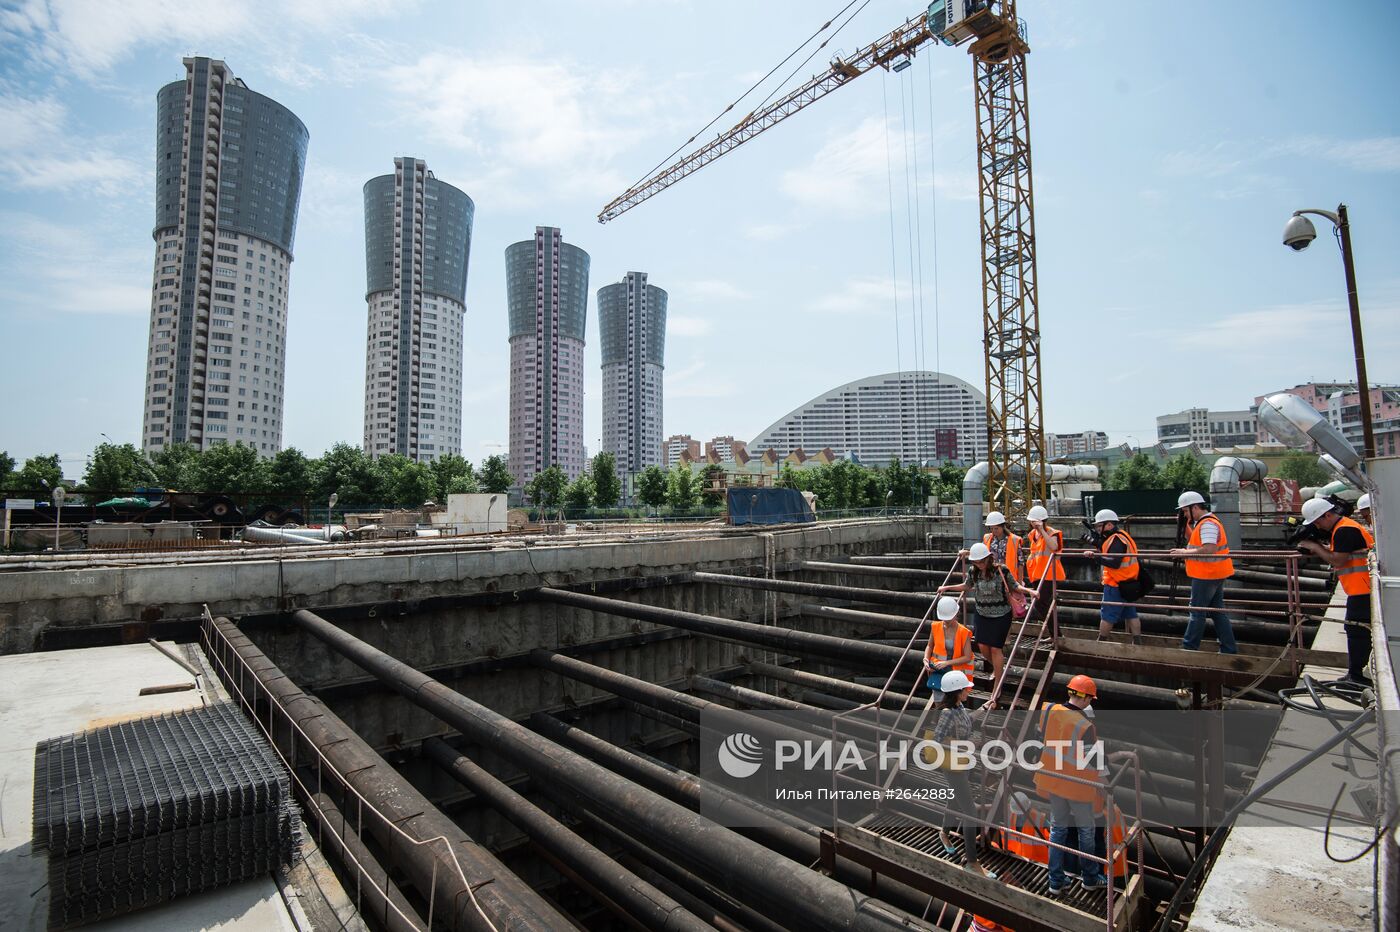 Строительство станции метро "Ходынское поле"